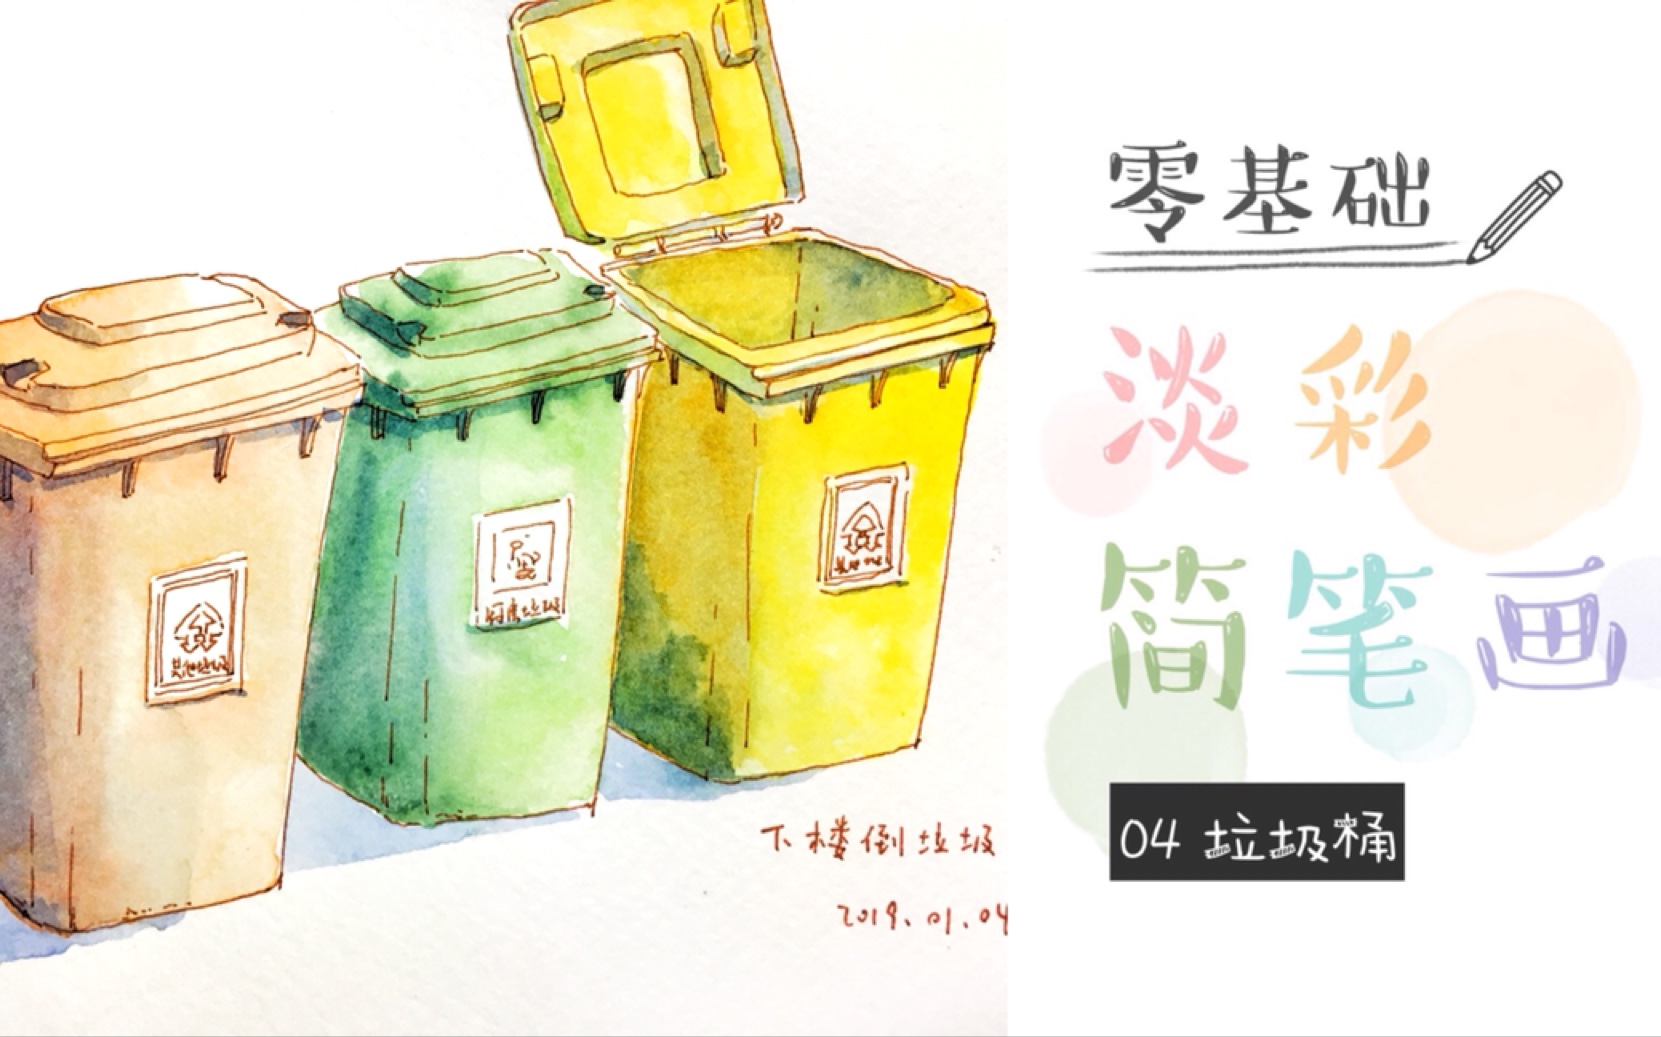 创意垃圾桶手绘效果图图片